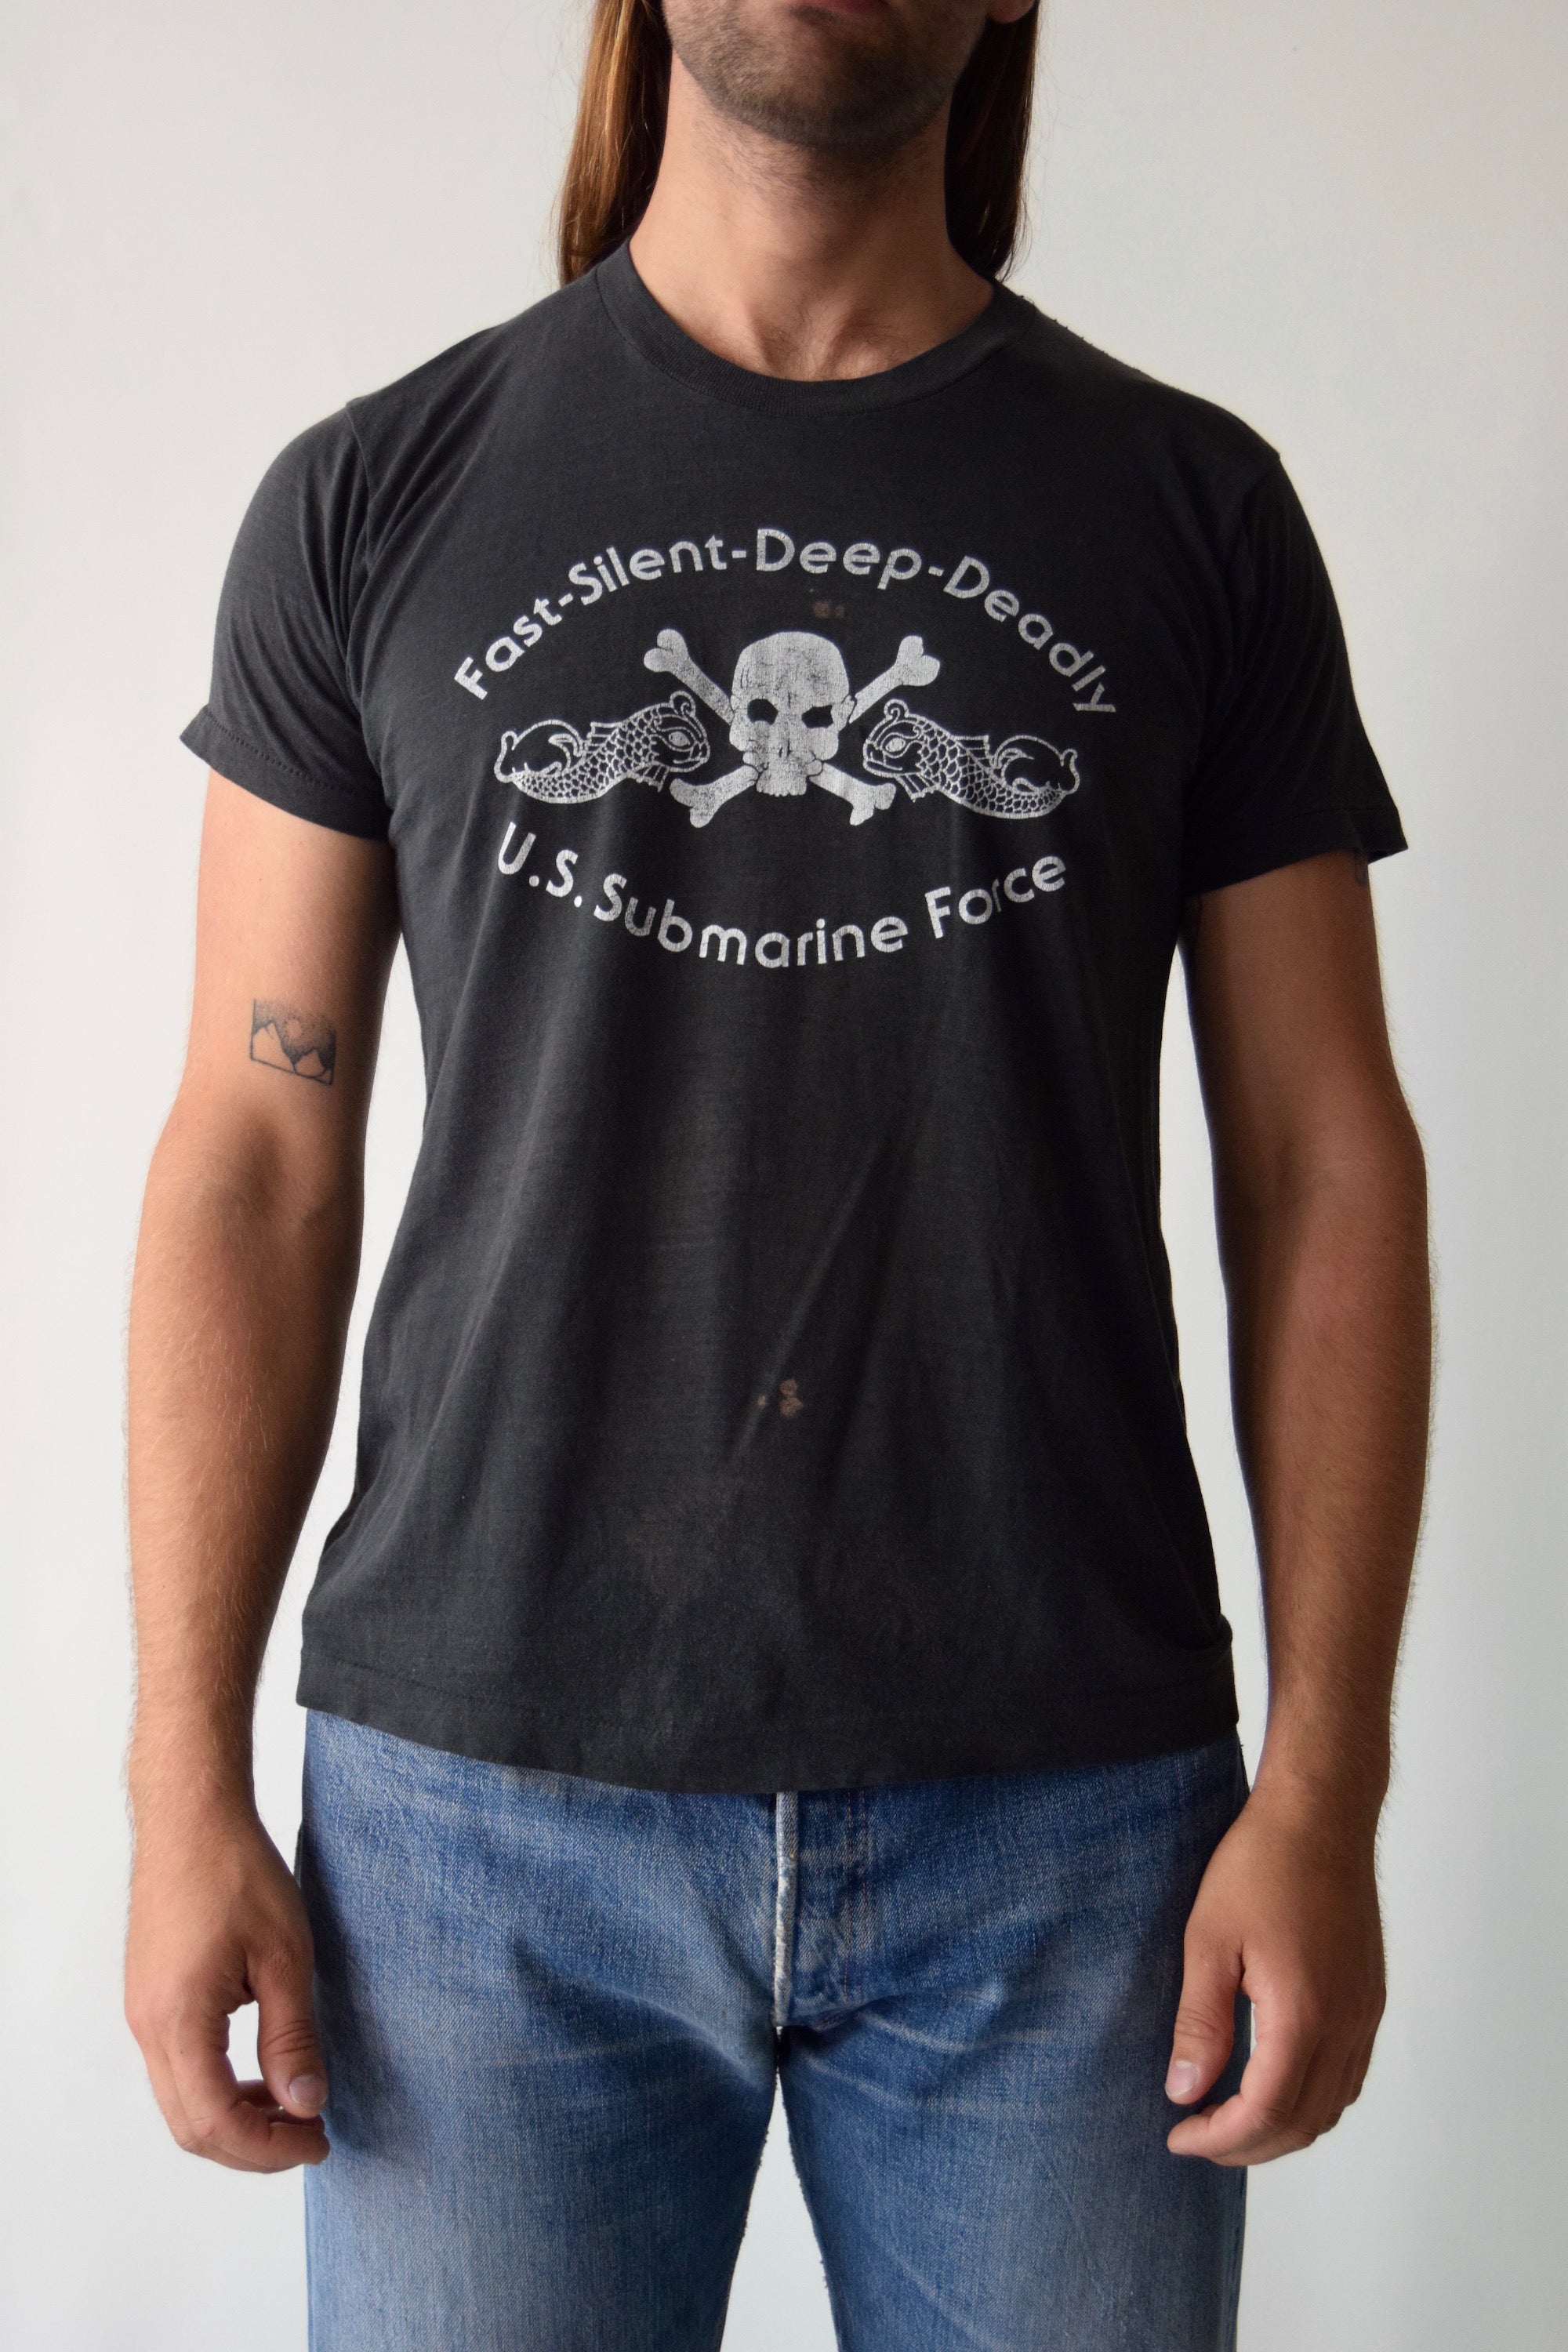 Vintage U.S. Submarine Force Skull & Bones T-Shirt